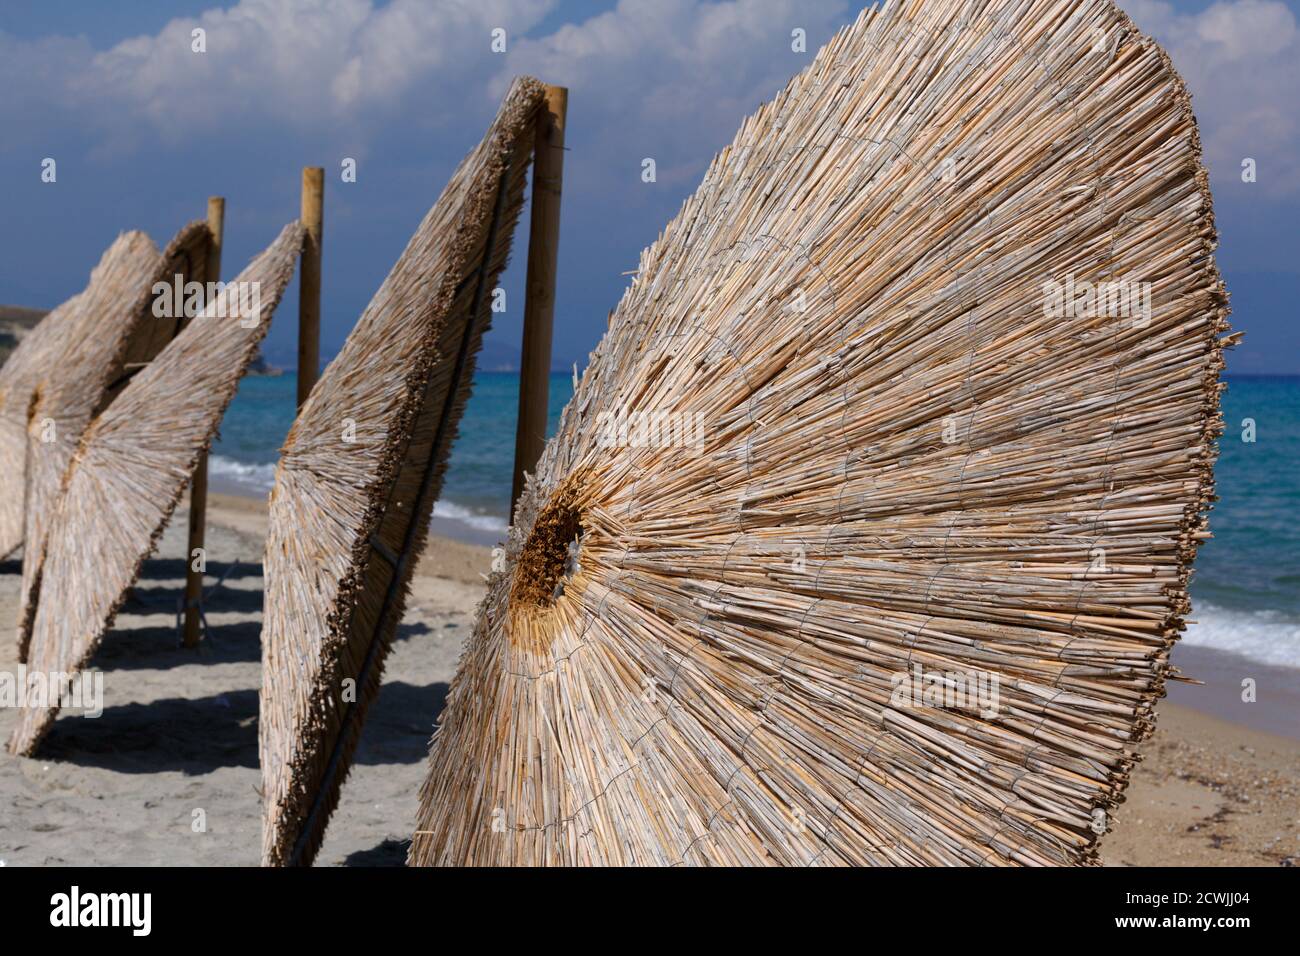 Reihen von Regenschirmen aus Stroh. Wicker Dach Sonnenschirm entfernt und lehnte sich gegen ihre Basis, stehen in einer Reihe auf einem Sandstrand mit azurblauem Meer wat Stockfoto